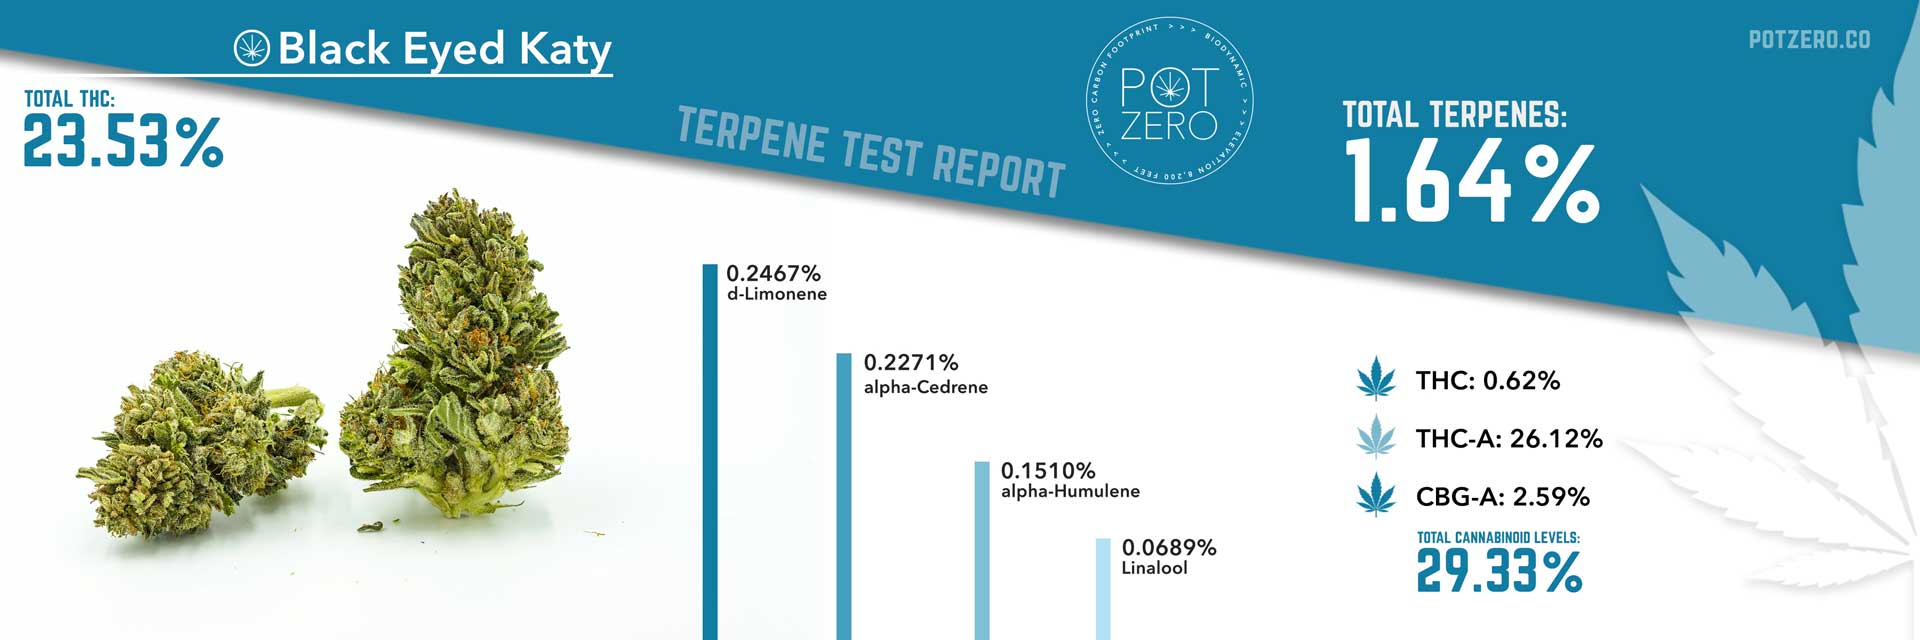 black eyed katy strain terpene test report